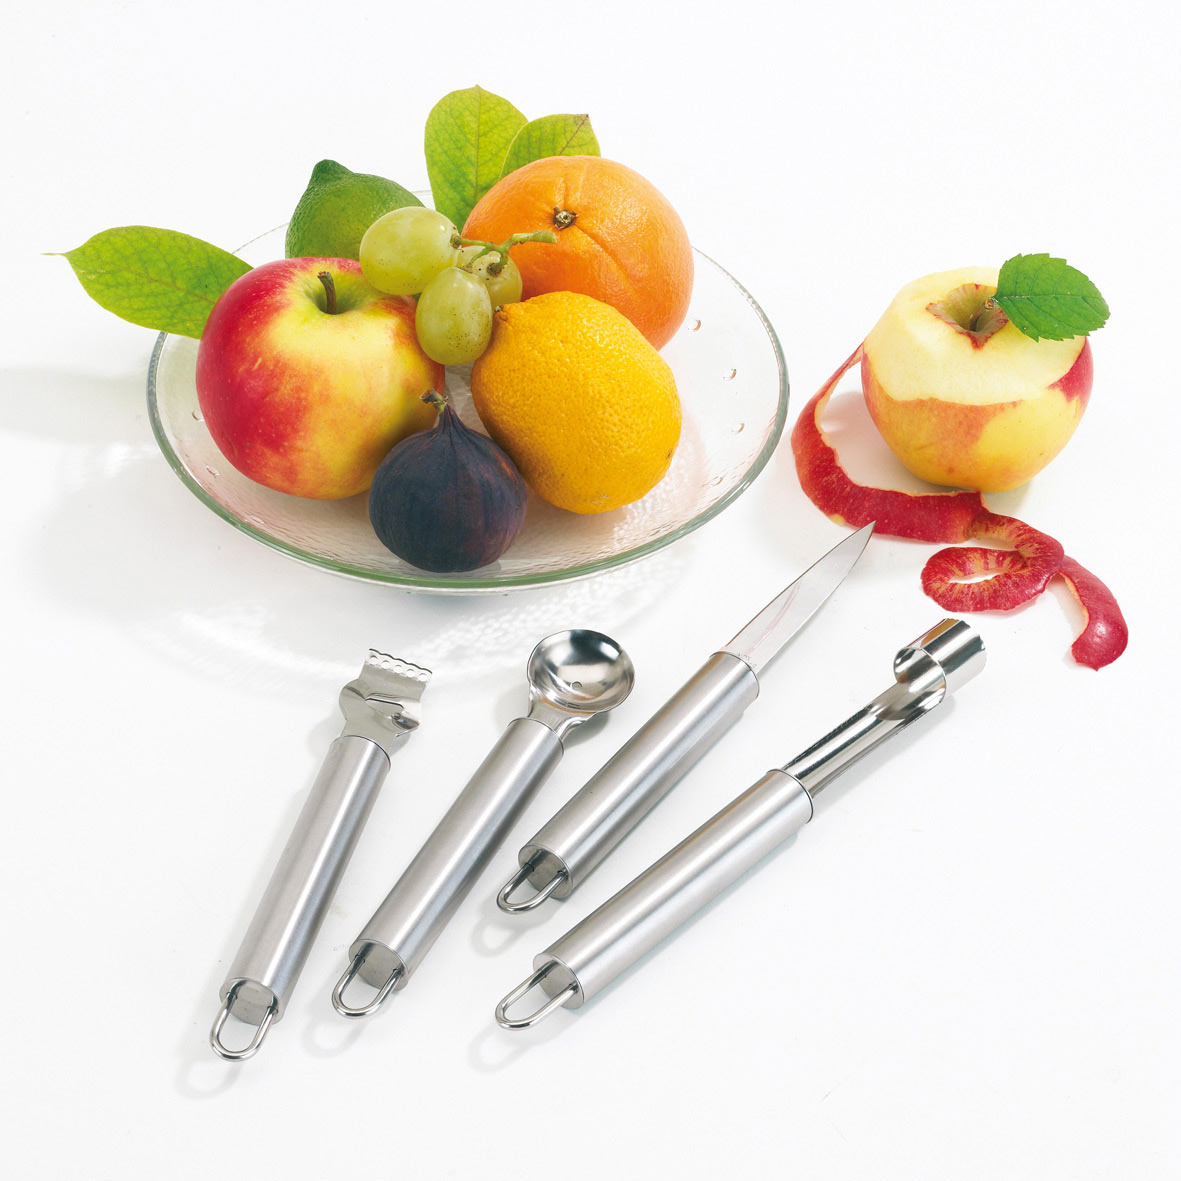 Set Couverts A Fruit Publicitaire - Les Couteaux De Cuisine Publicitaires -  Couteaux Publicitaires